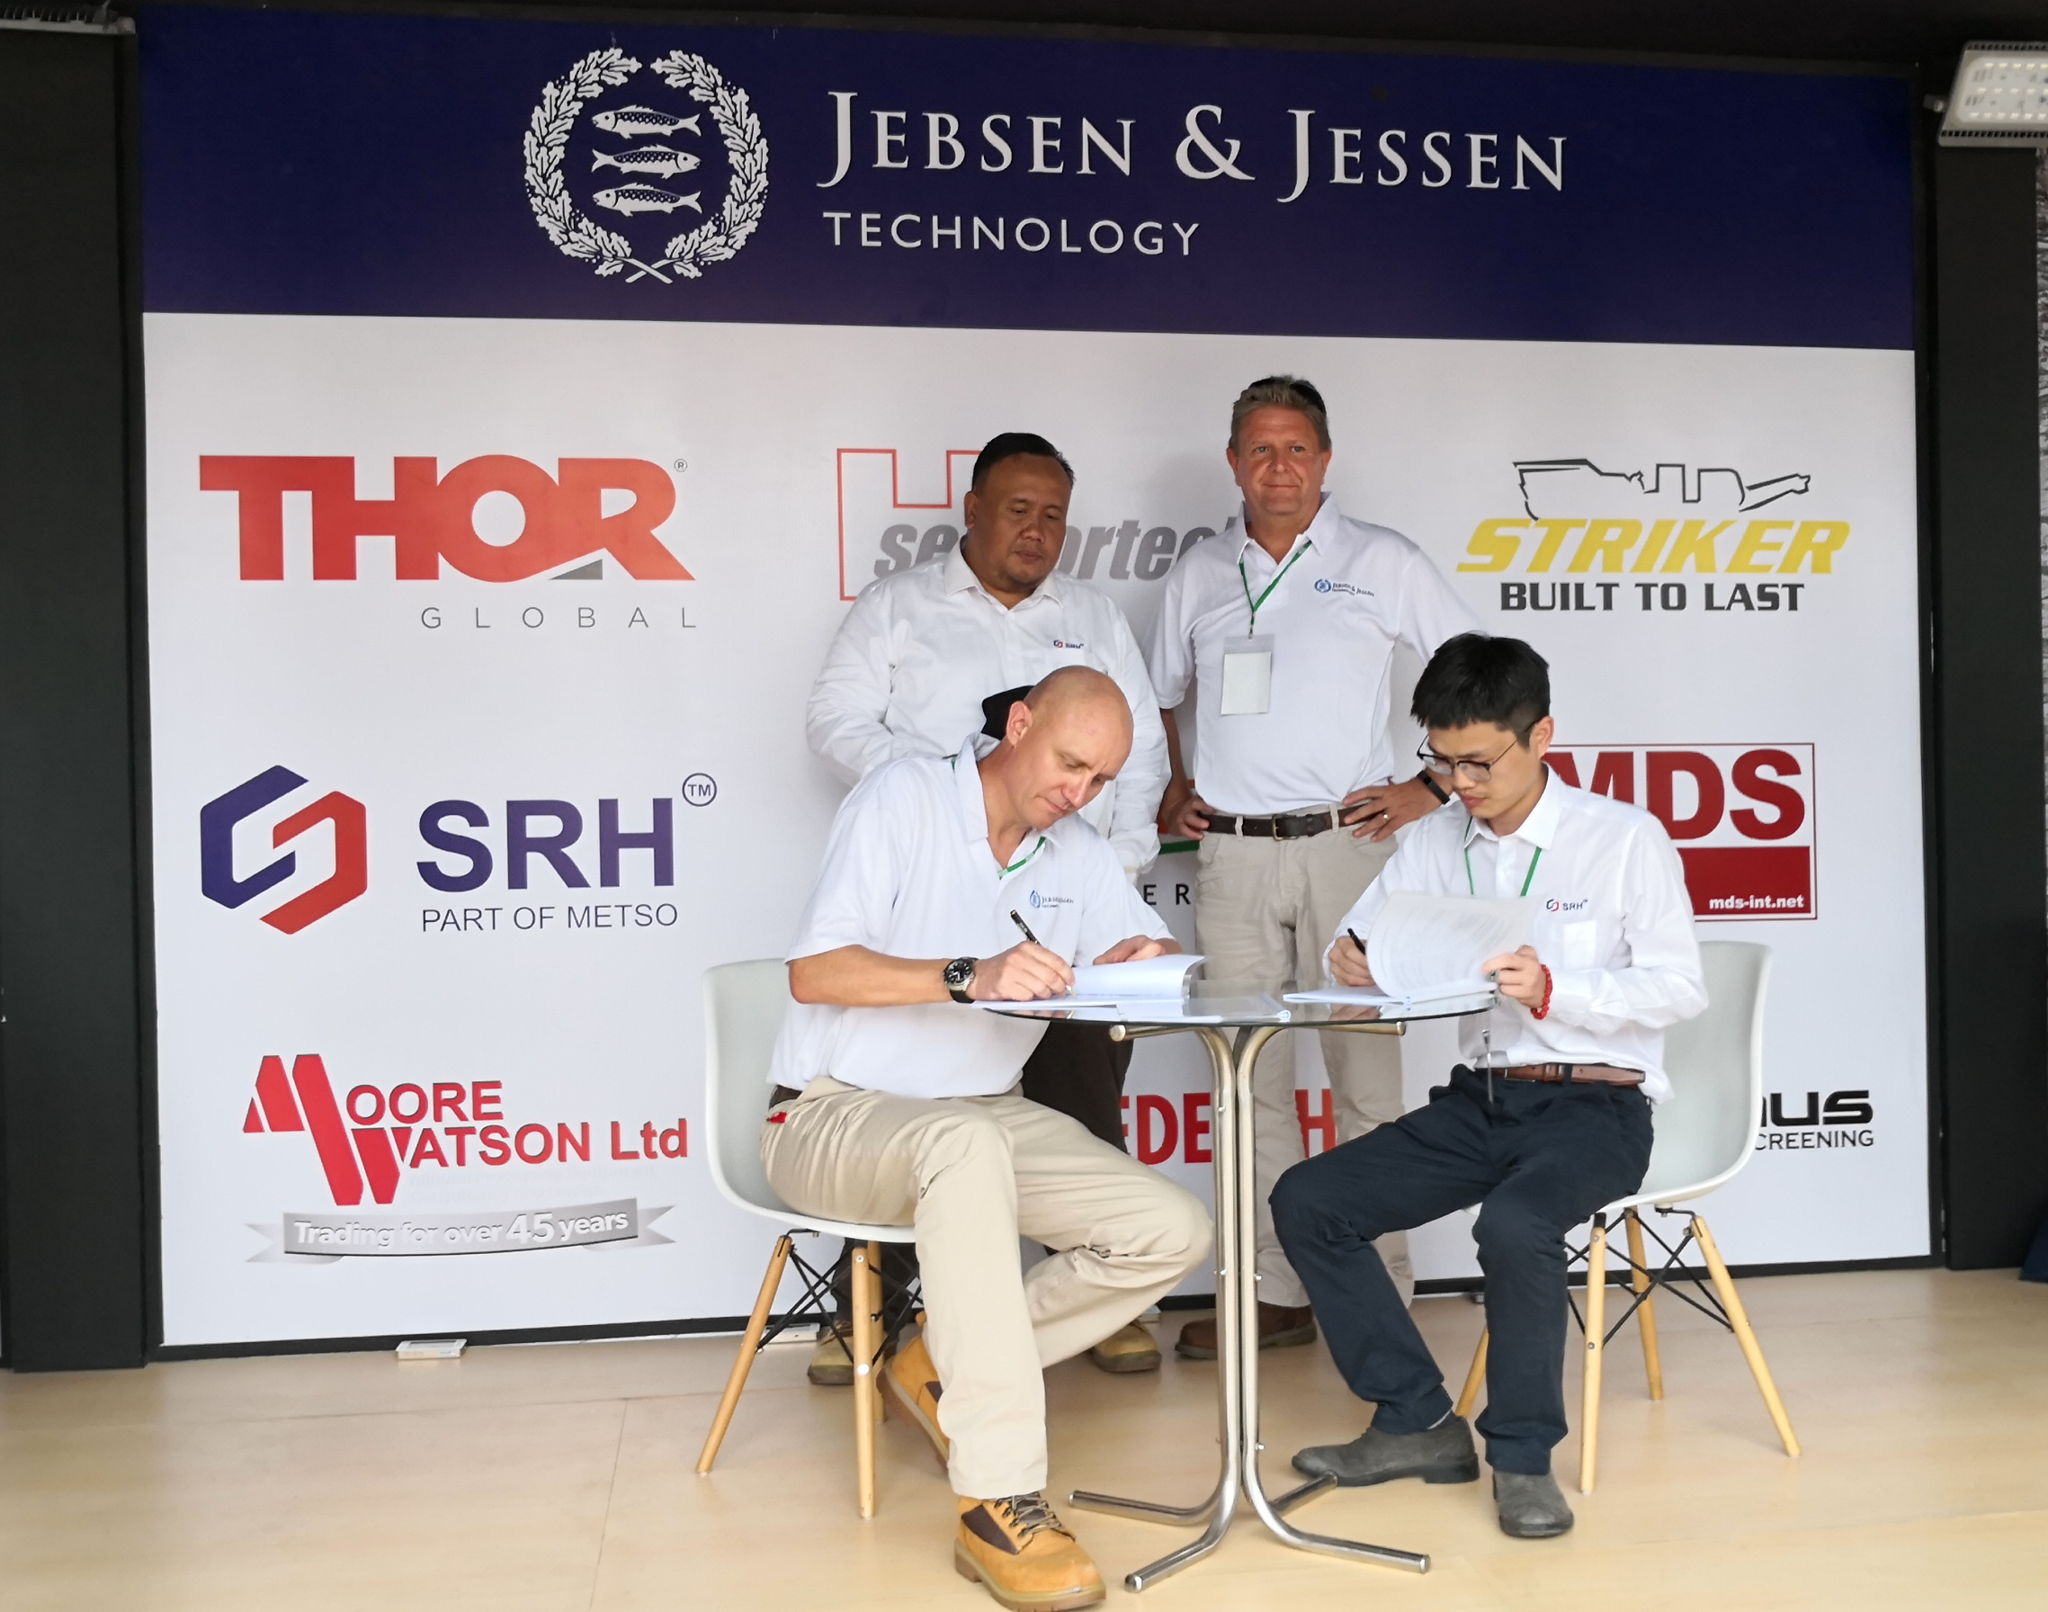 Michael Nielsen, Presiden Direktur Jebsen & Jessen Teknologi Indonesia menandatangani perjanjian kerjasama dengan David Luo, Overseas Sales Manager dari Shaorui Heavy Industries